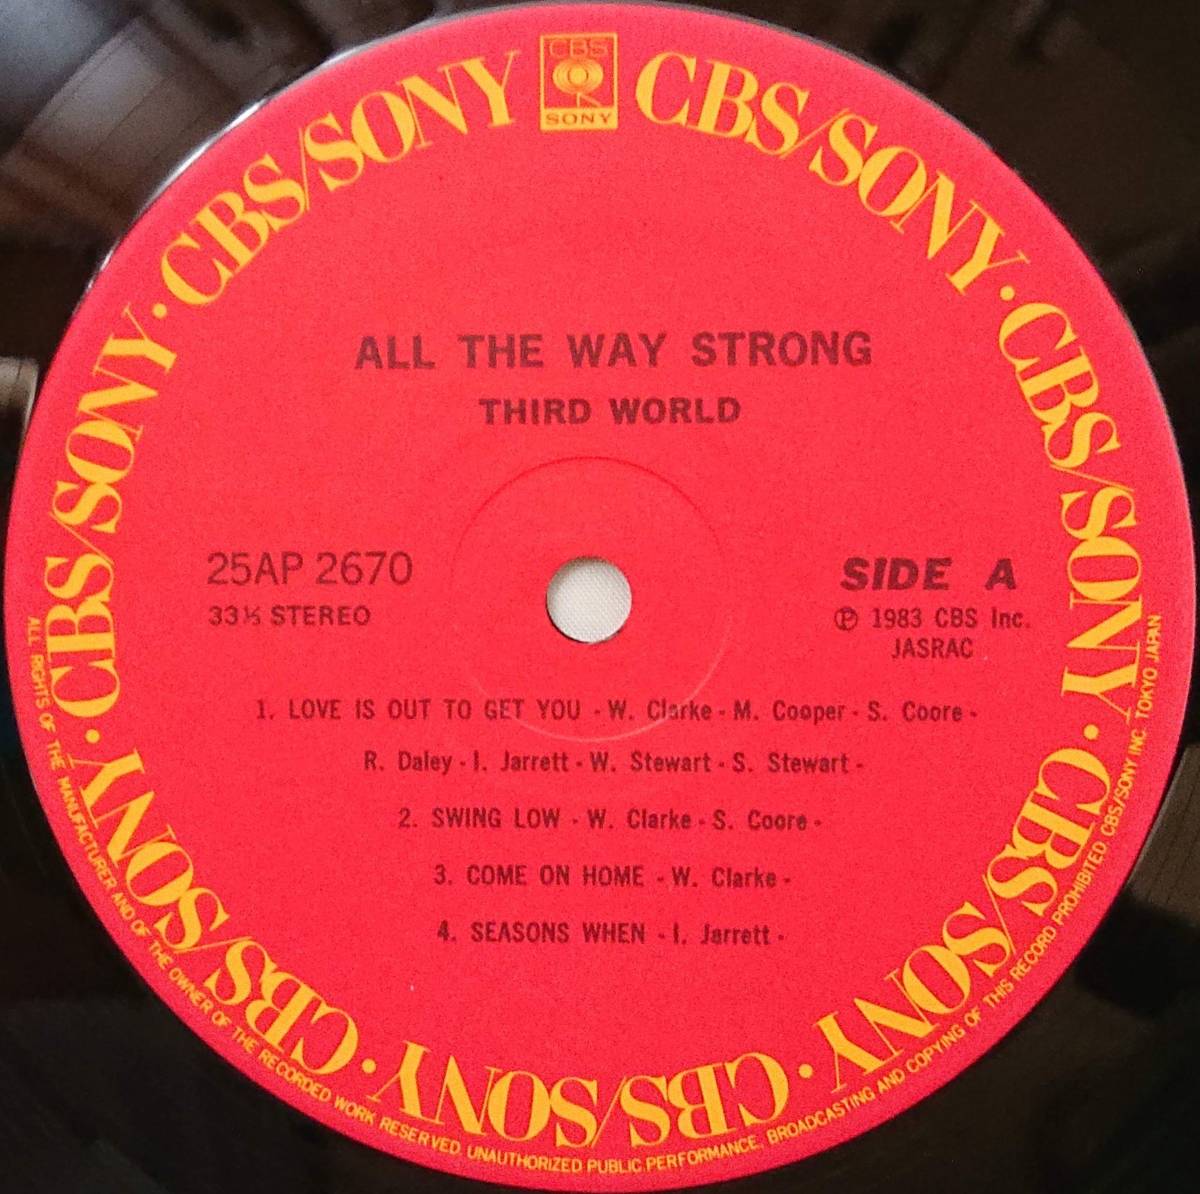 THIRD WORLD : ALL THE WAY STRONG サード・ワールド 帯なし 国内盤 中古 アナログ LPレコード盤 1983年 25AP 2670 M2-KDO-1243_画像4